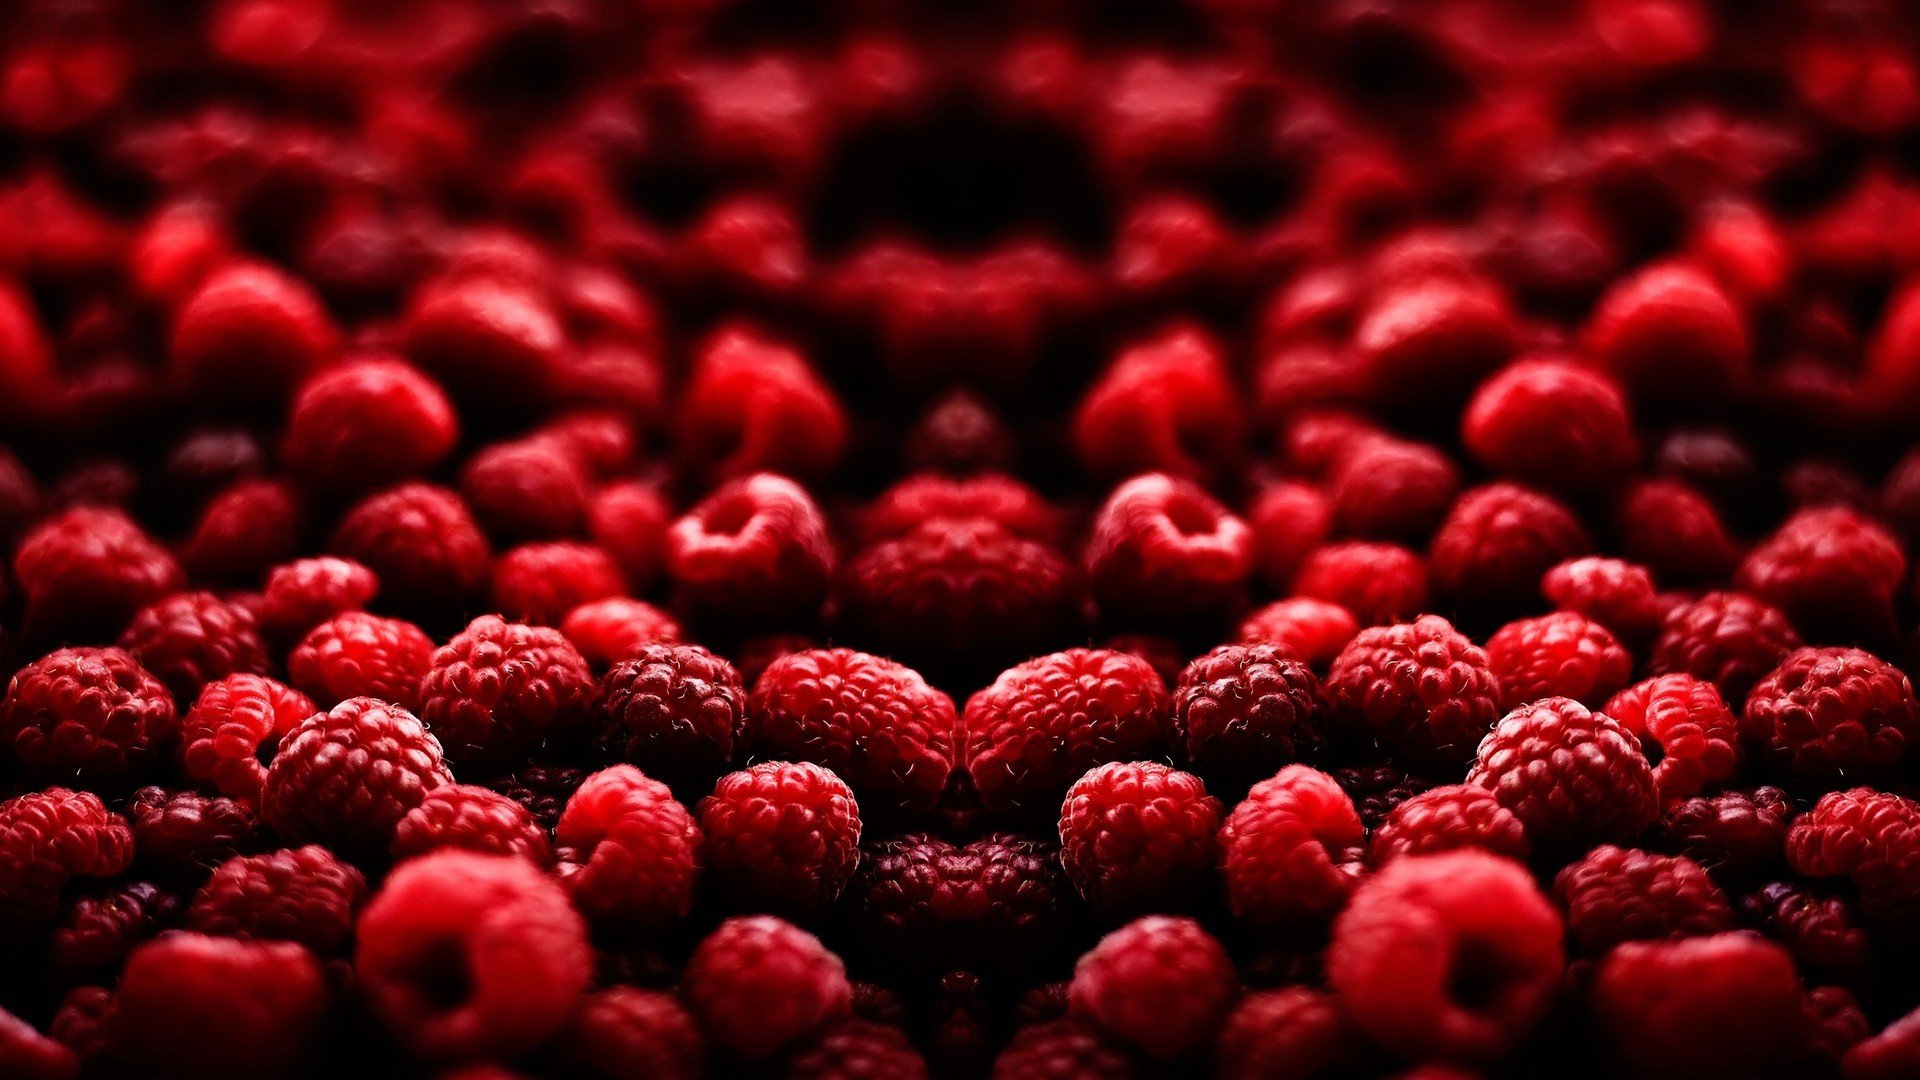 mirrored, Raspberries Wallpaper